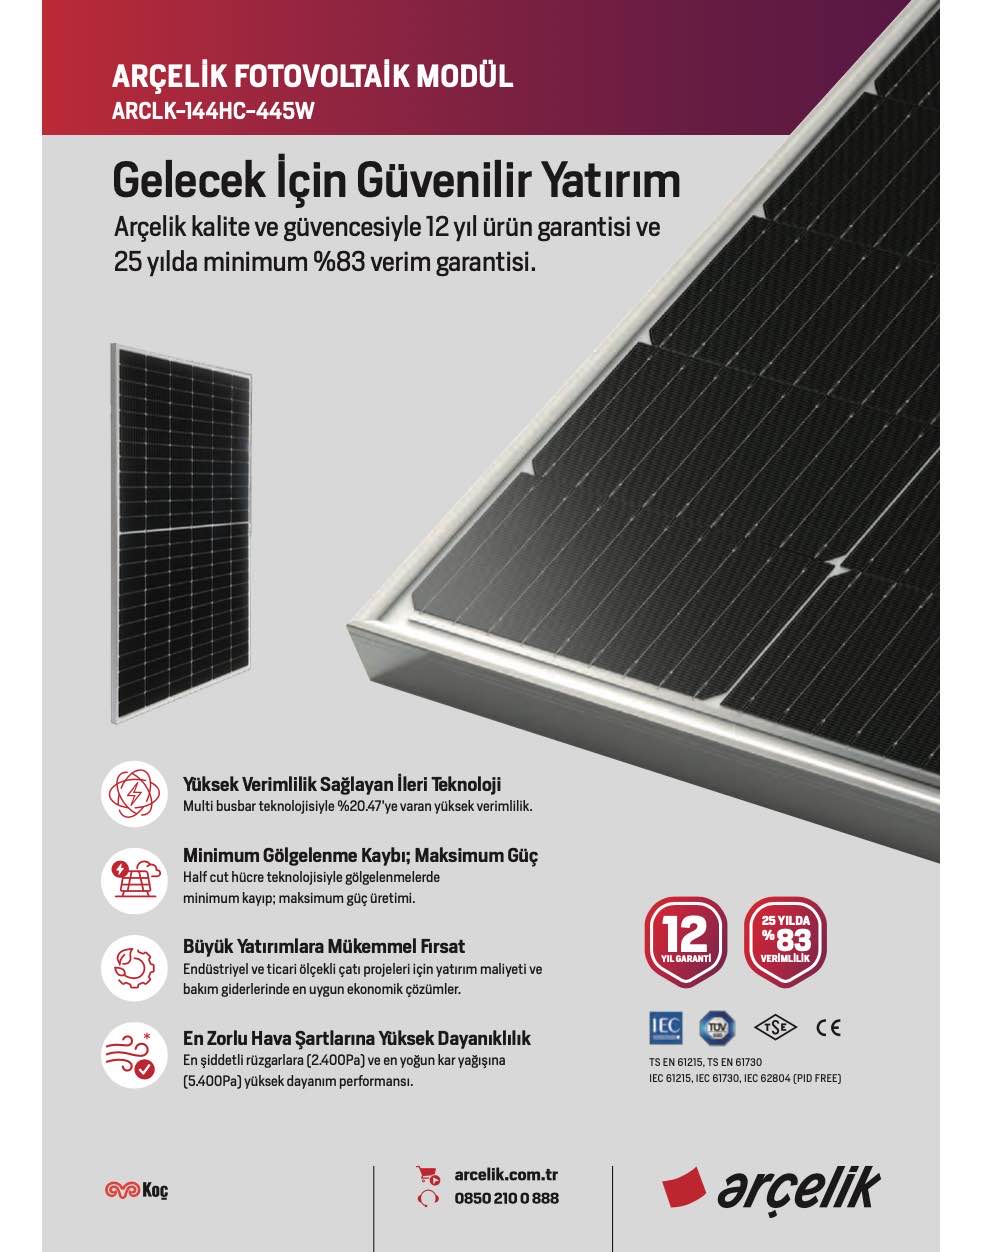 arcelik solar panel 12 yıl garanti